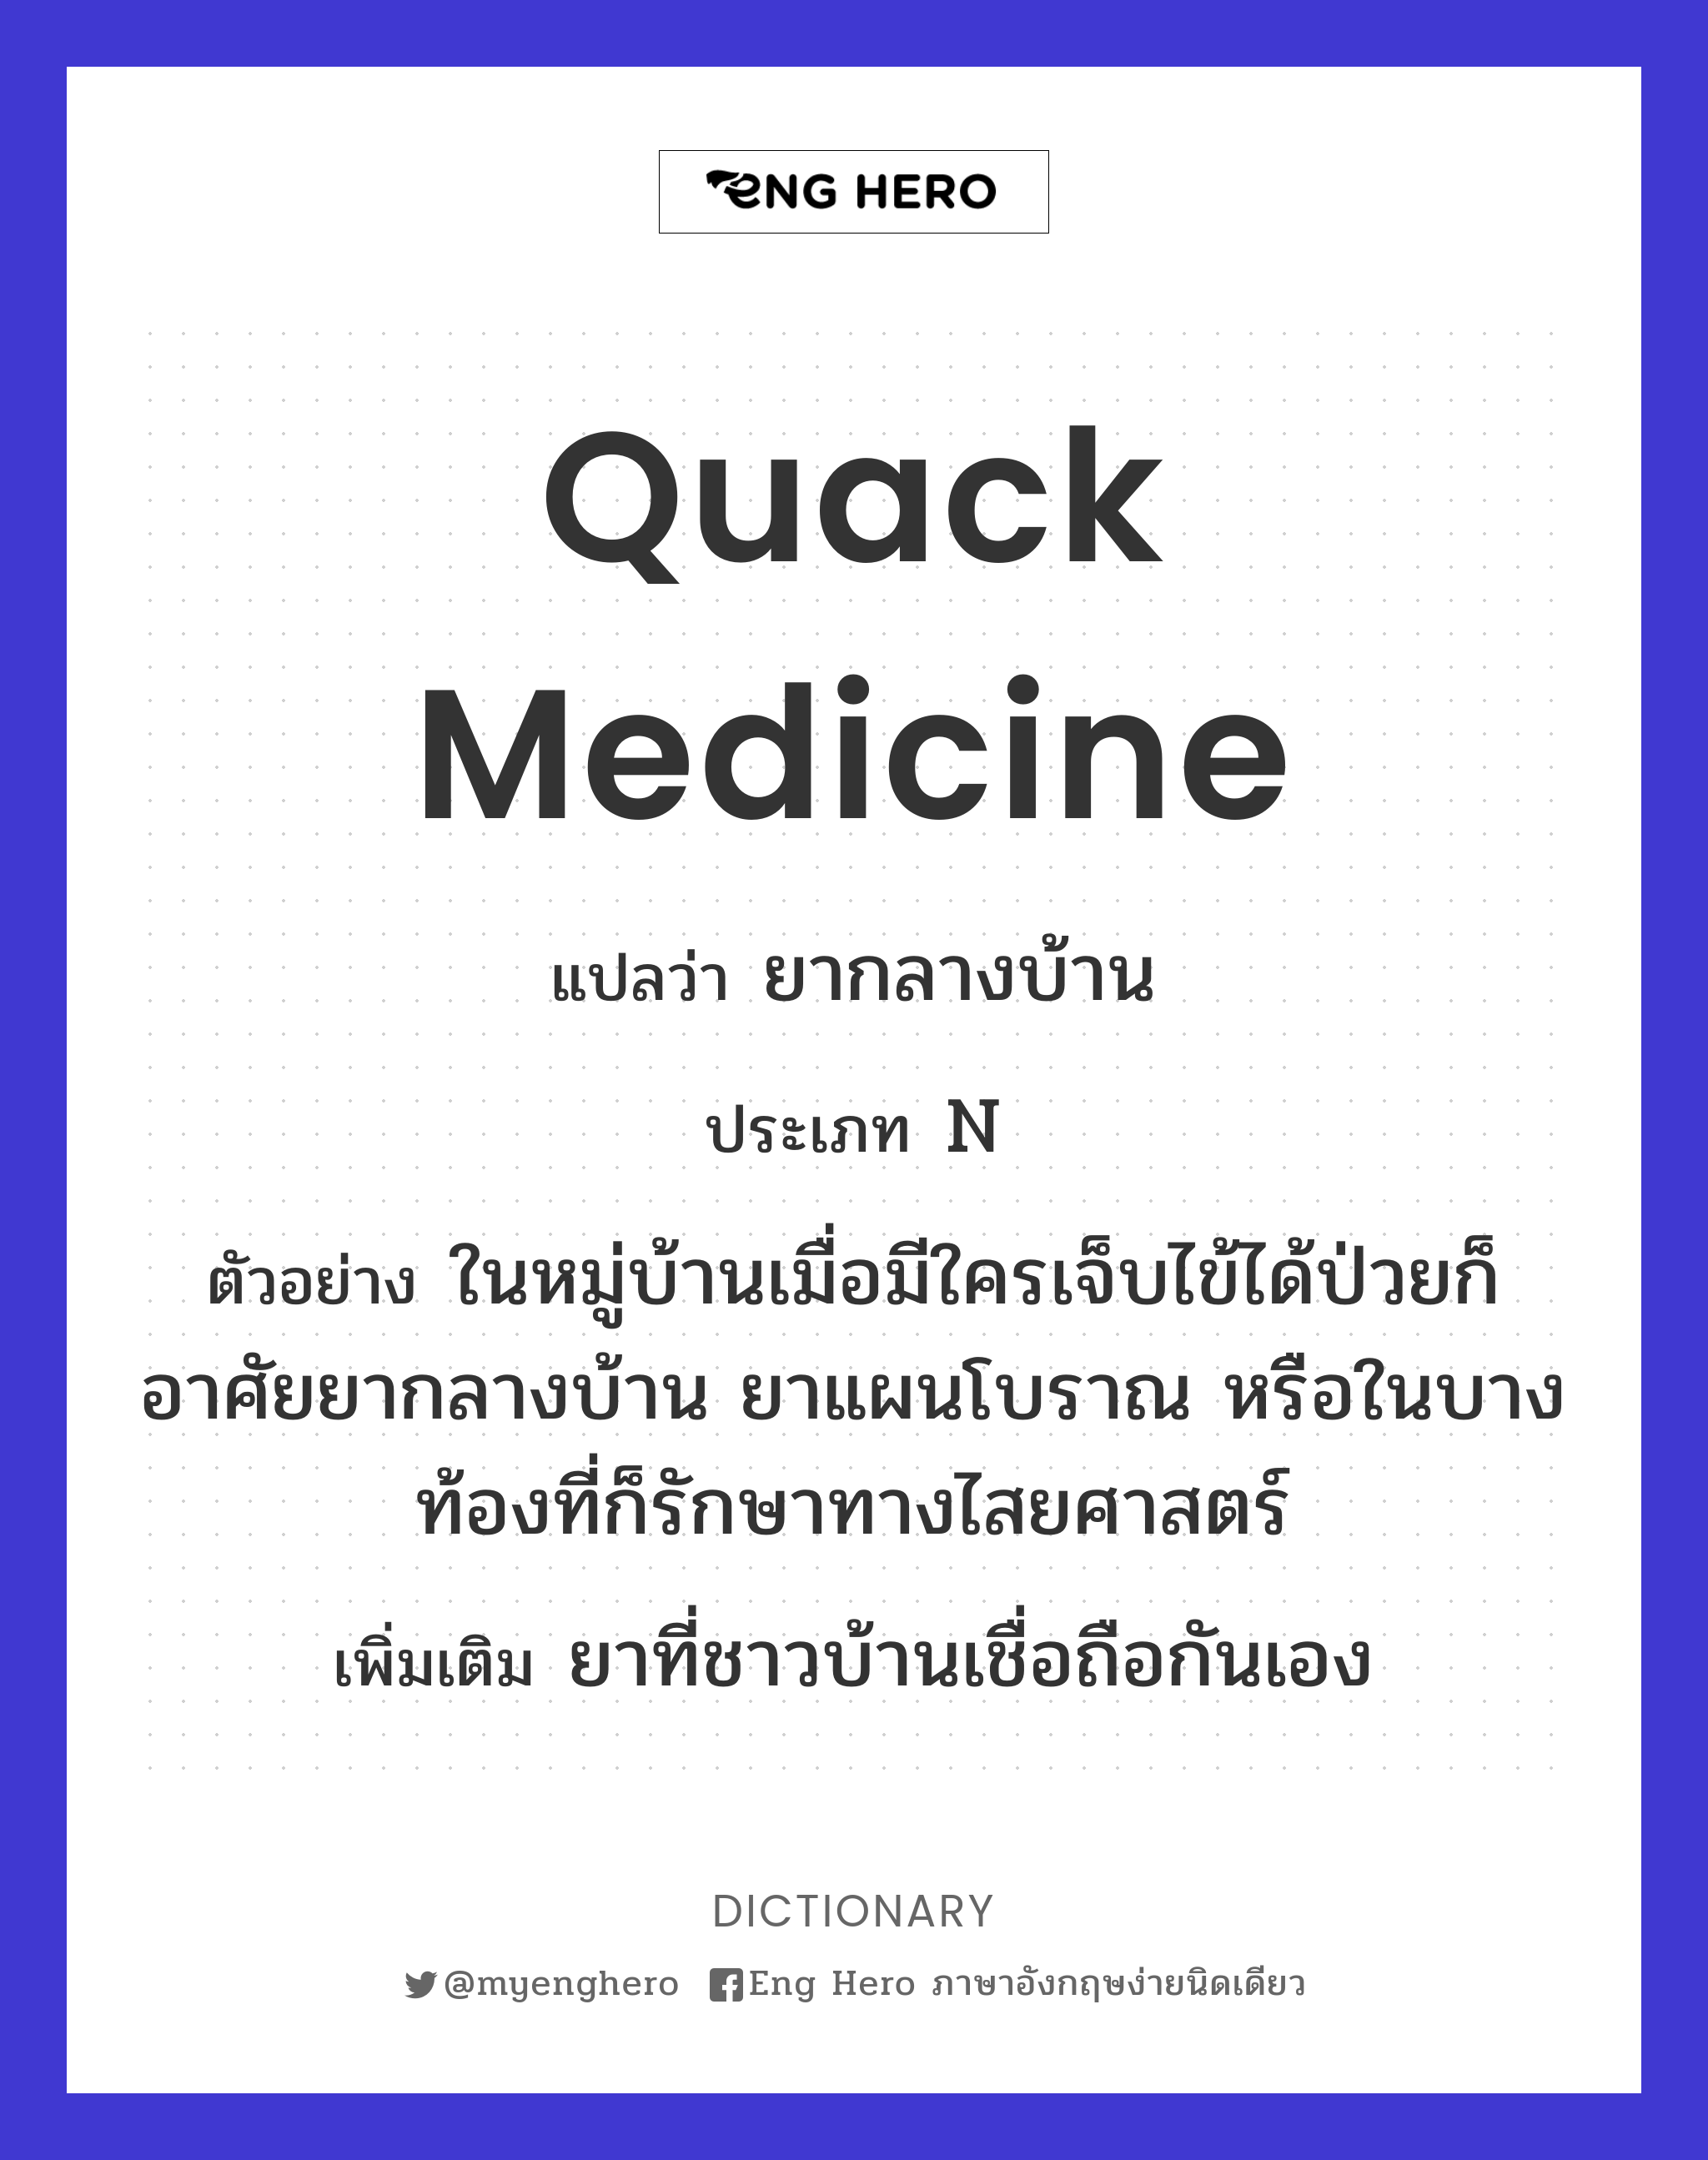 quack medicine